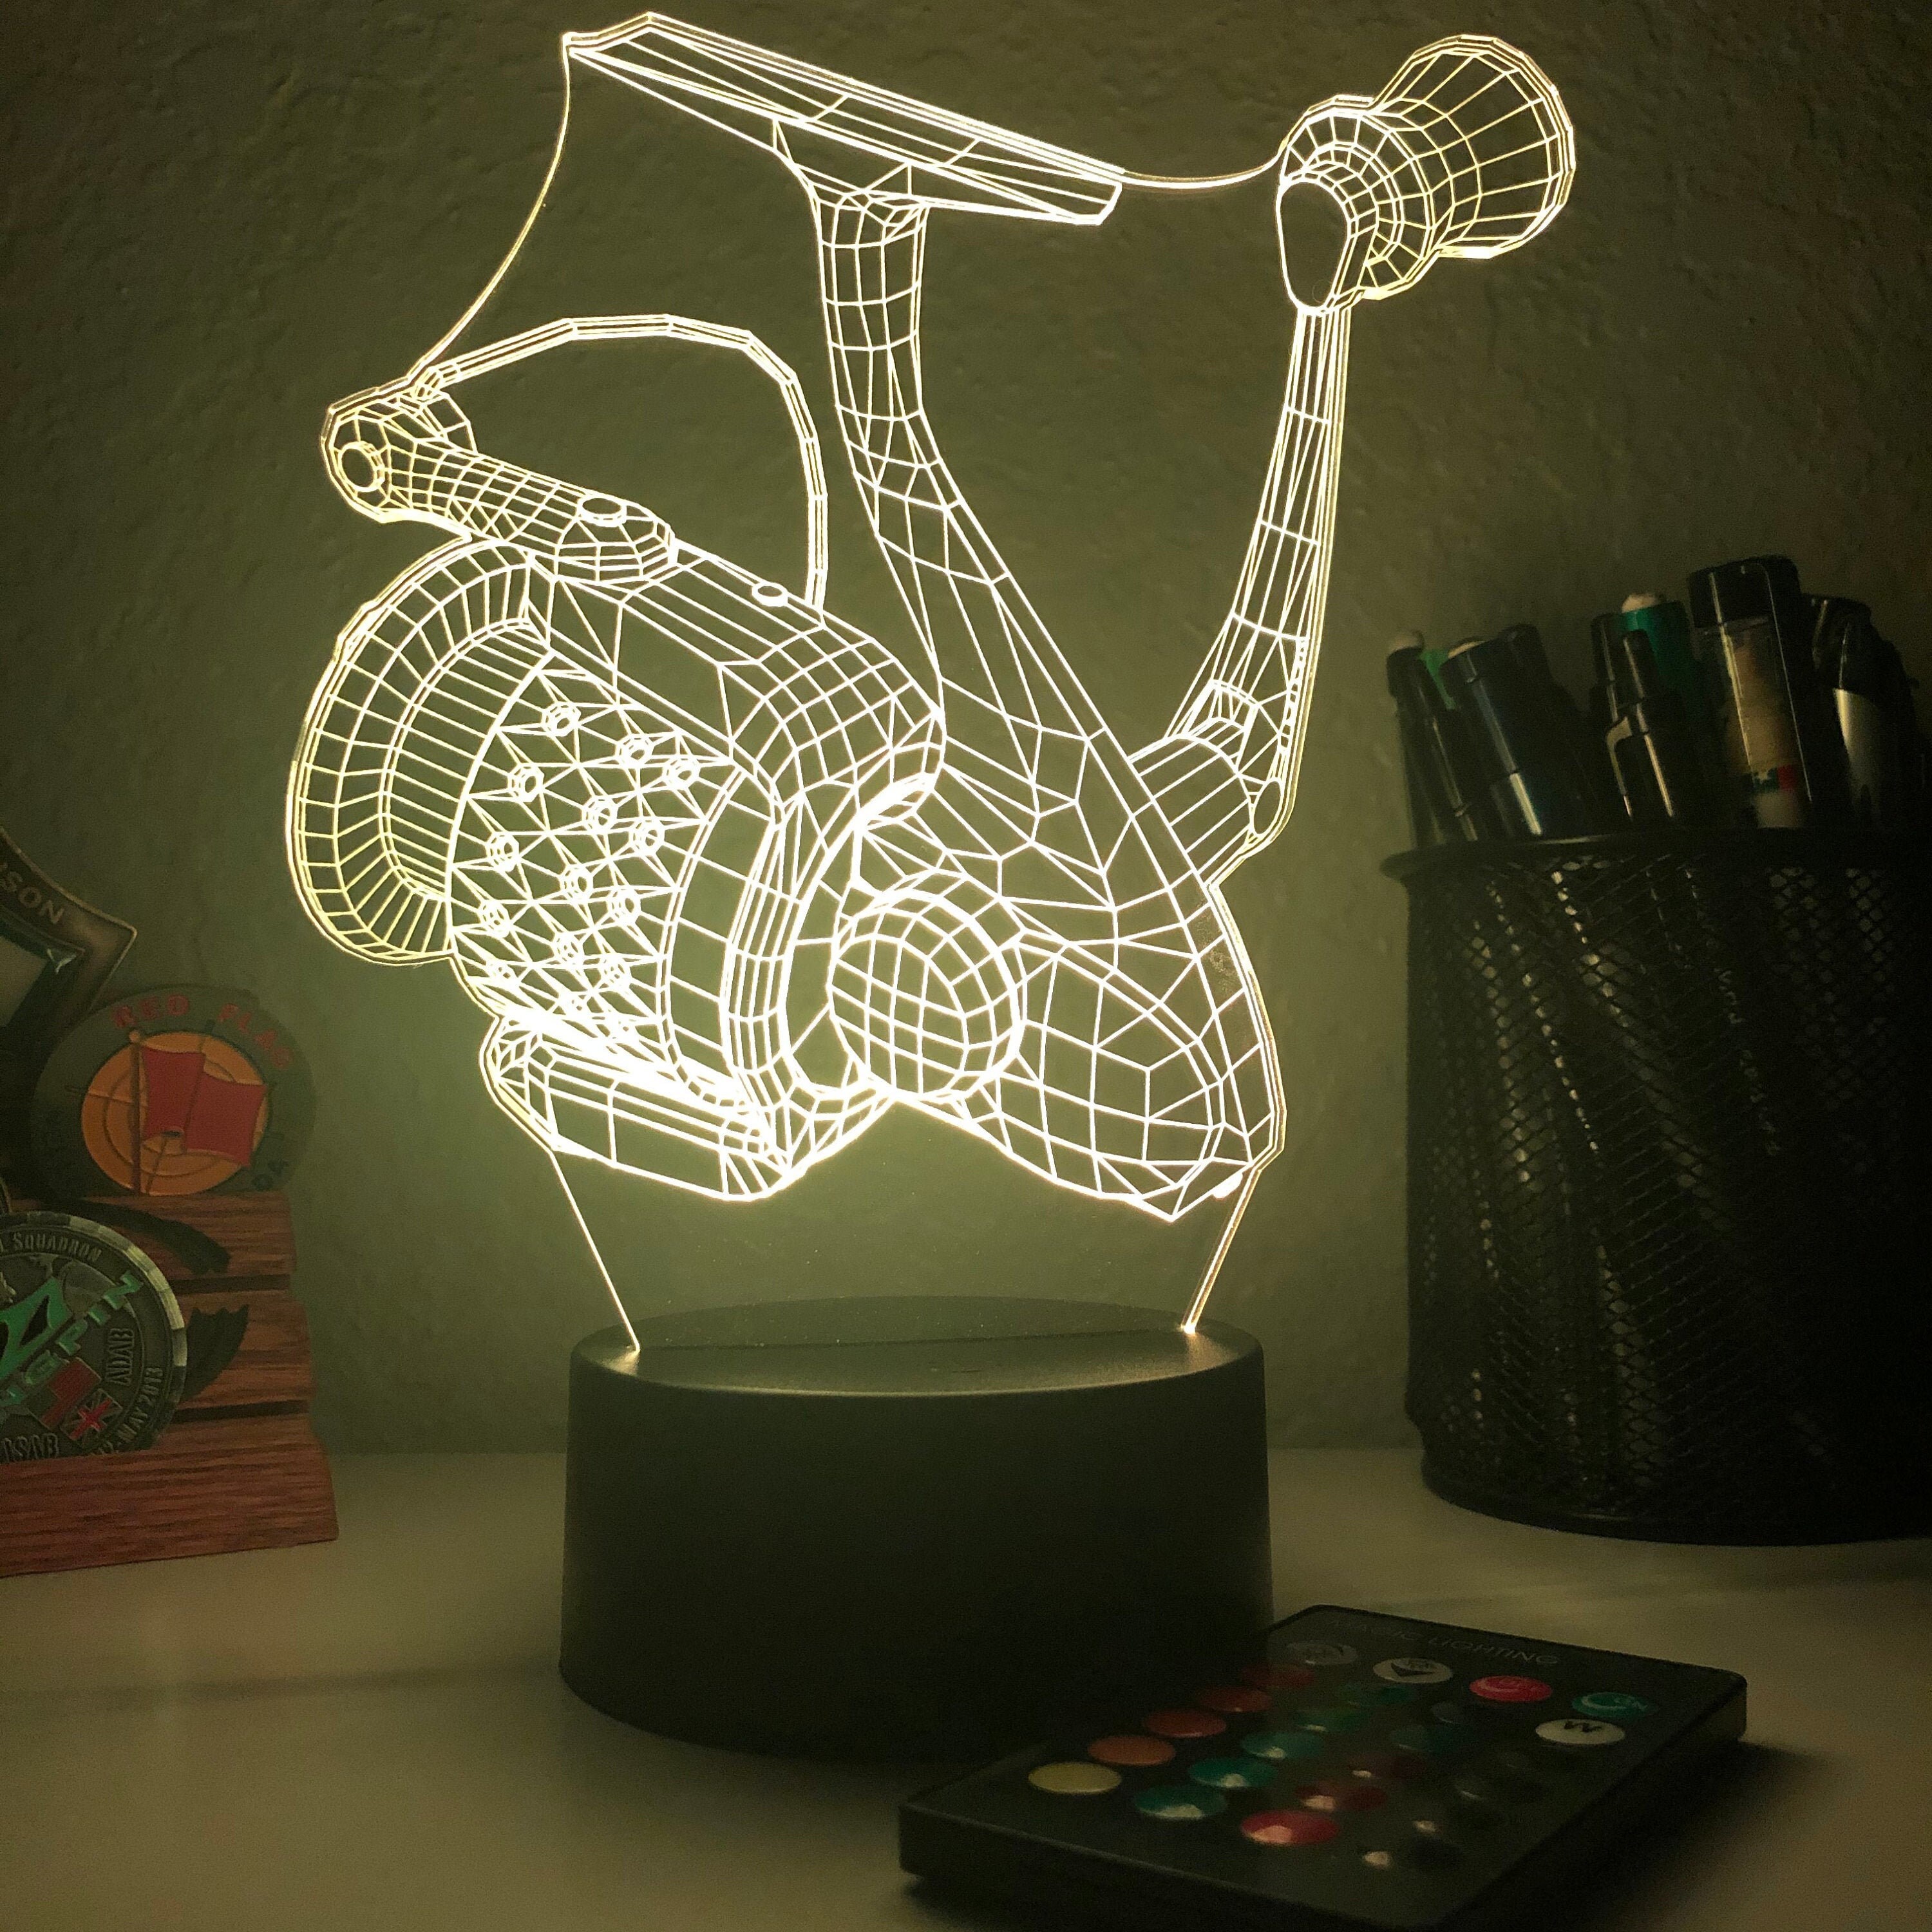 Buy 3D LED Lampen nahe Licht, 7 Farben, Touch/Fernbedienung Art